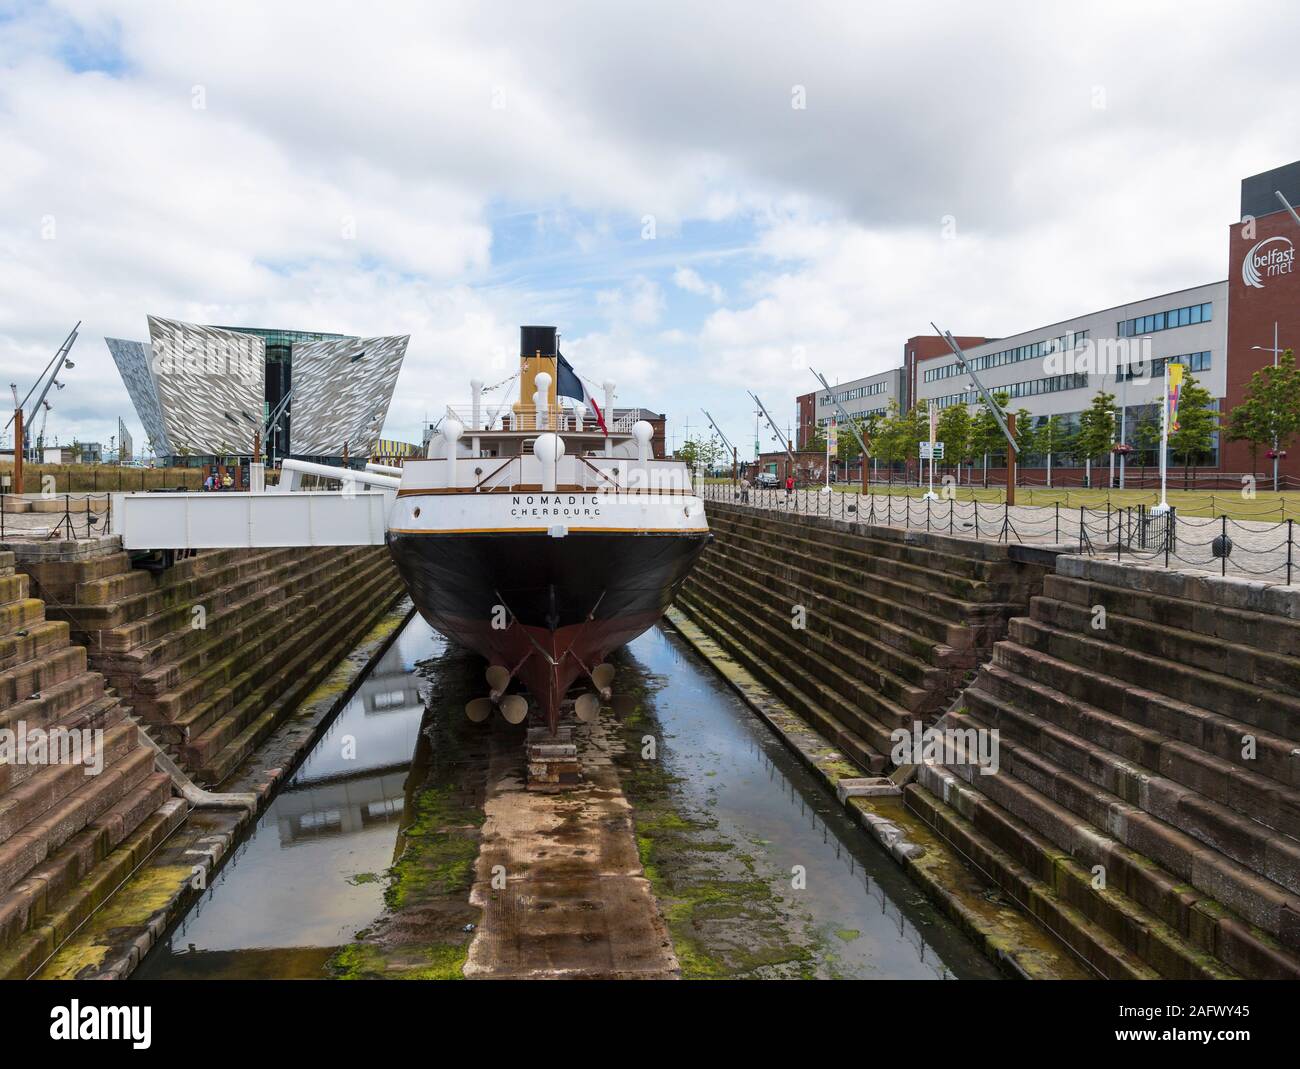 Titanic Belfast visitor centre et SS Nomadic bateau en cale sèche, l'Irlande du Nord Banque D'Images